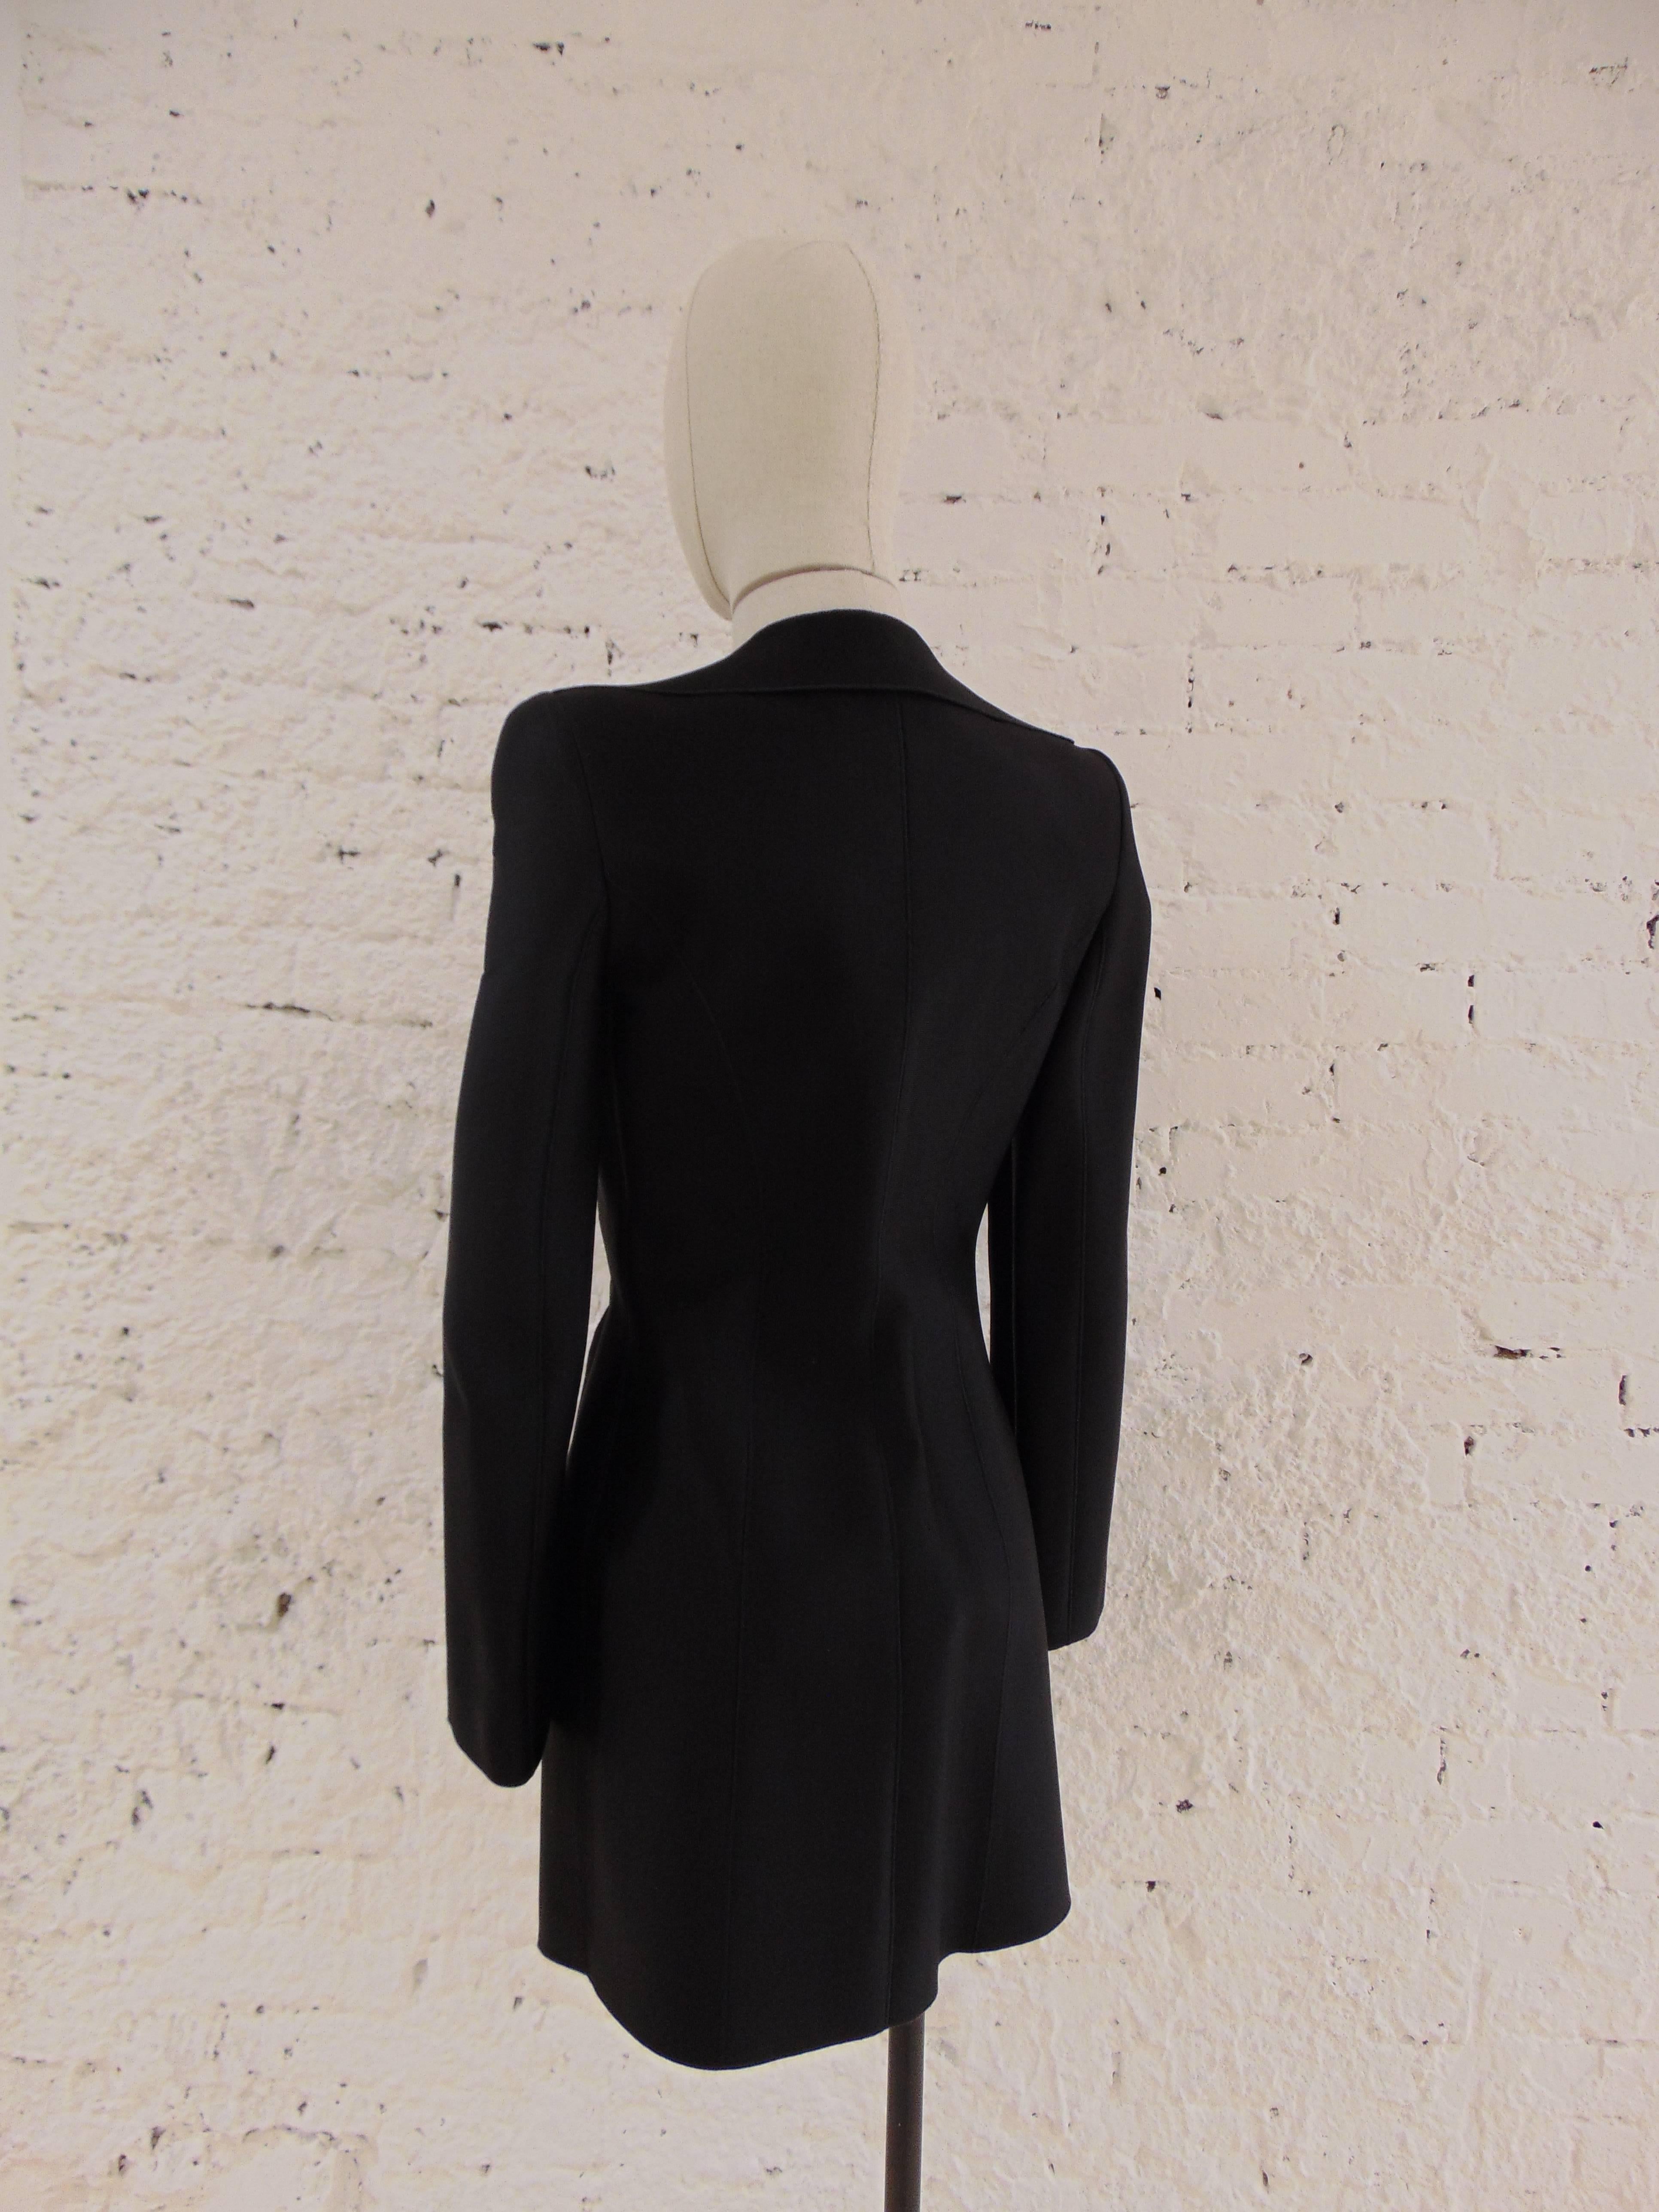 Women's Giorgio Armani black latex coat